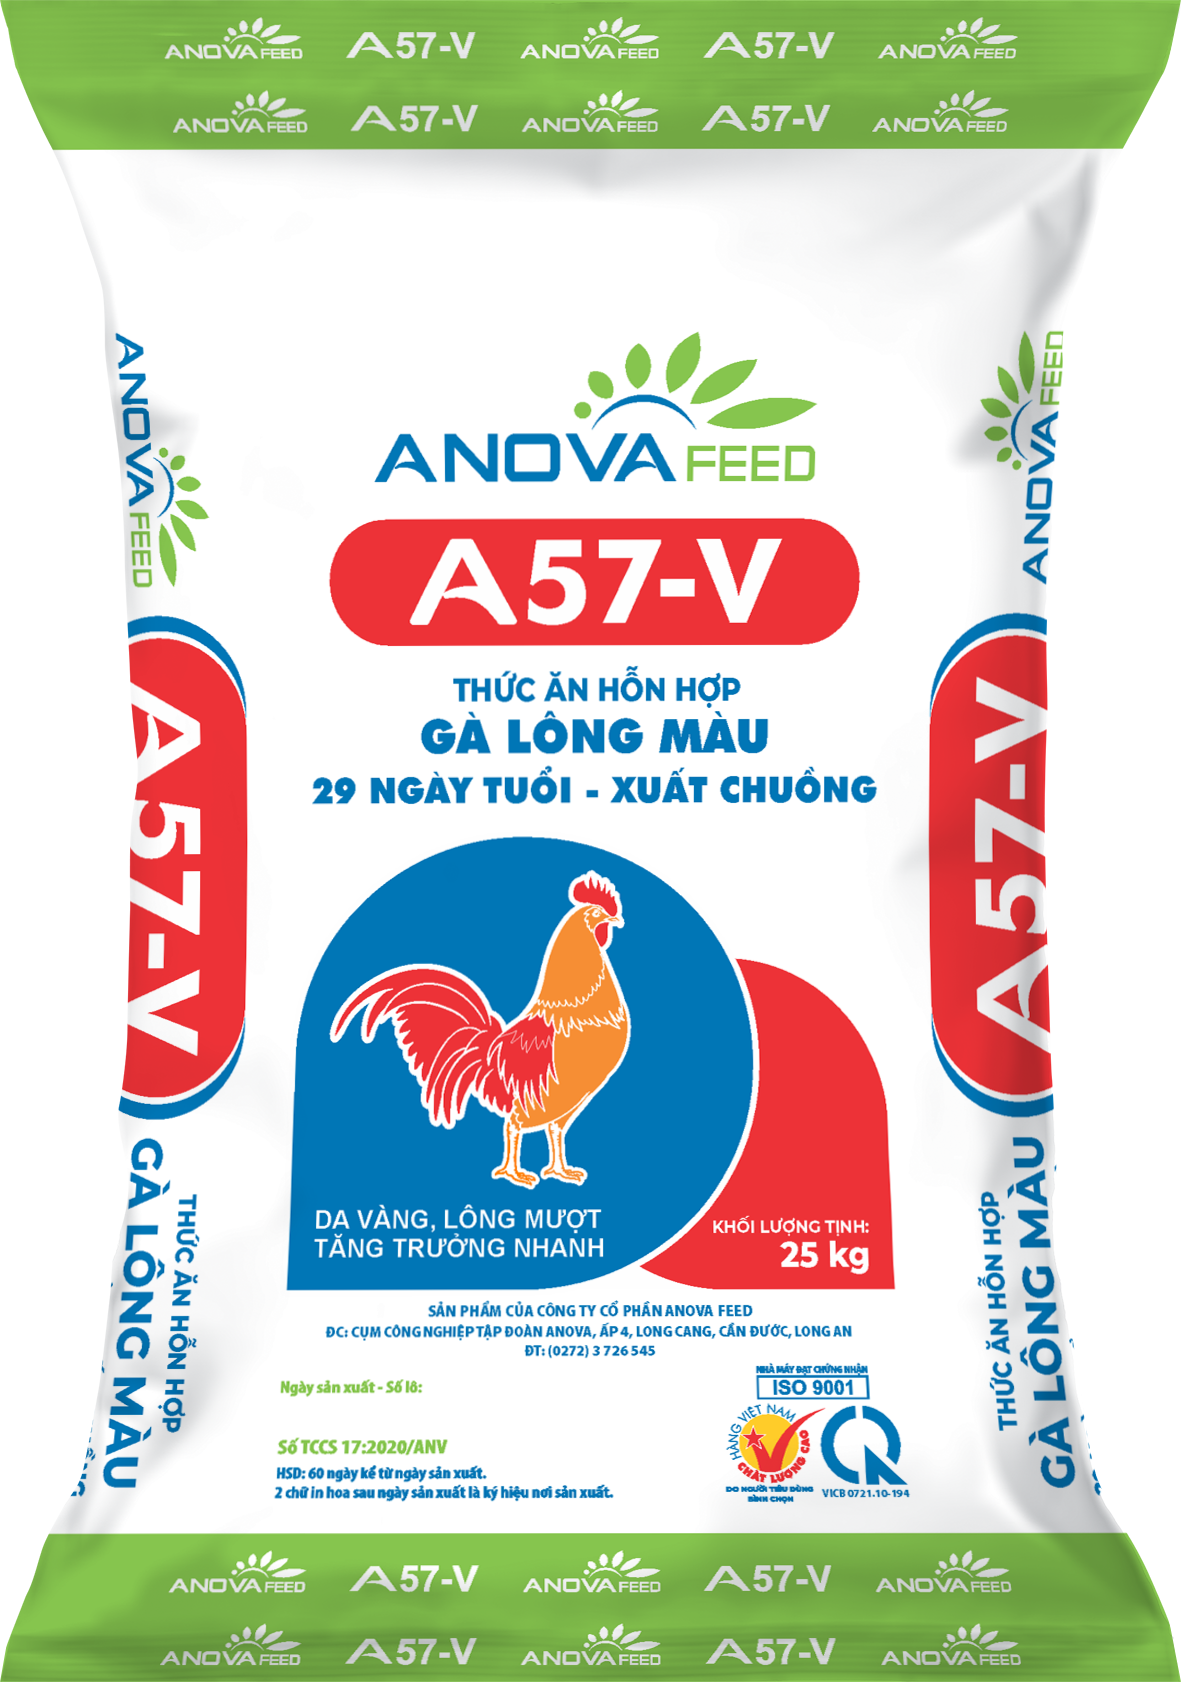 Thức ăn hỗn hợp gà lông màu 29 ngày tuổi - xuất chuồng A57-V